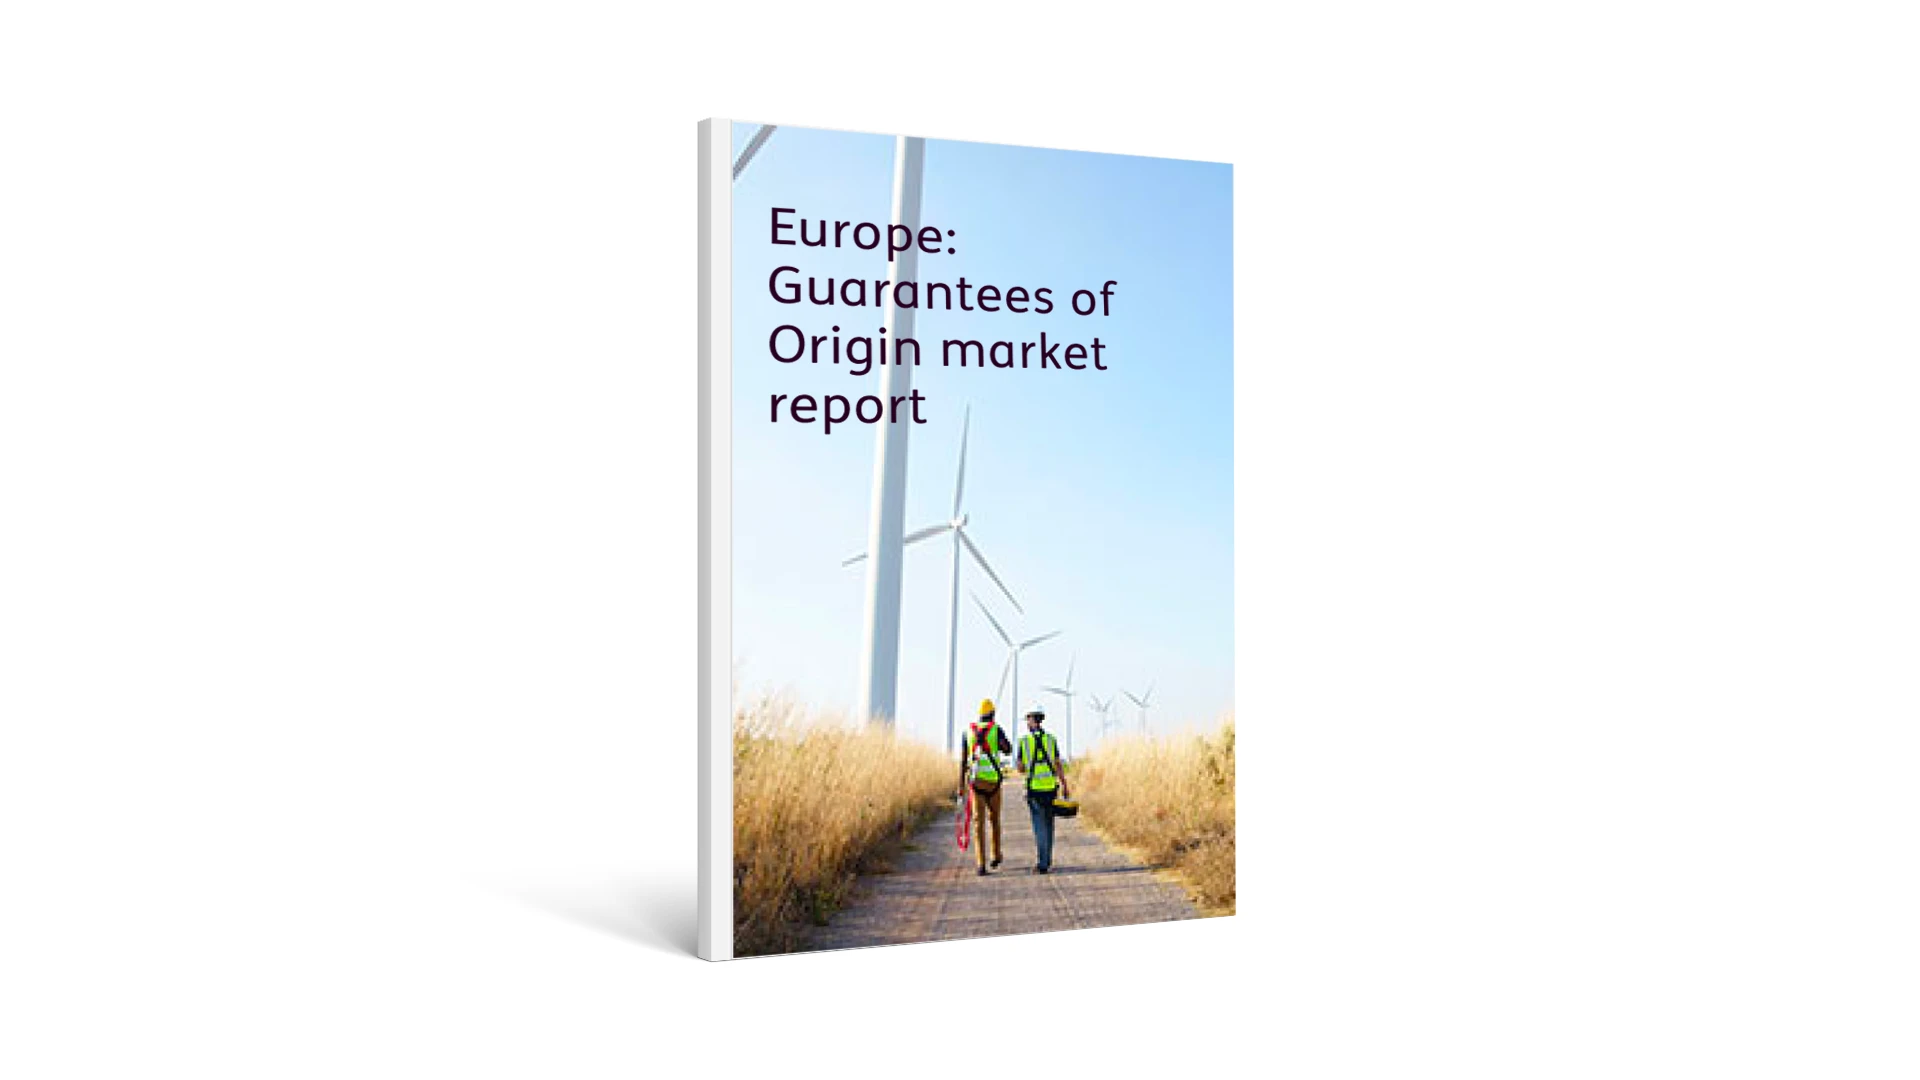 Europe: Guarantees of Origin market report